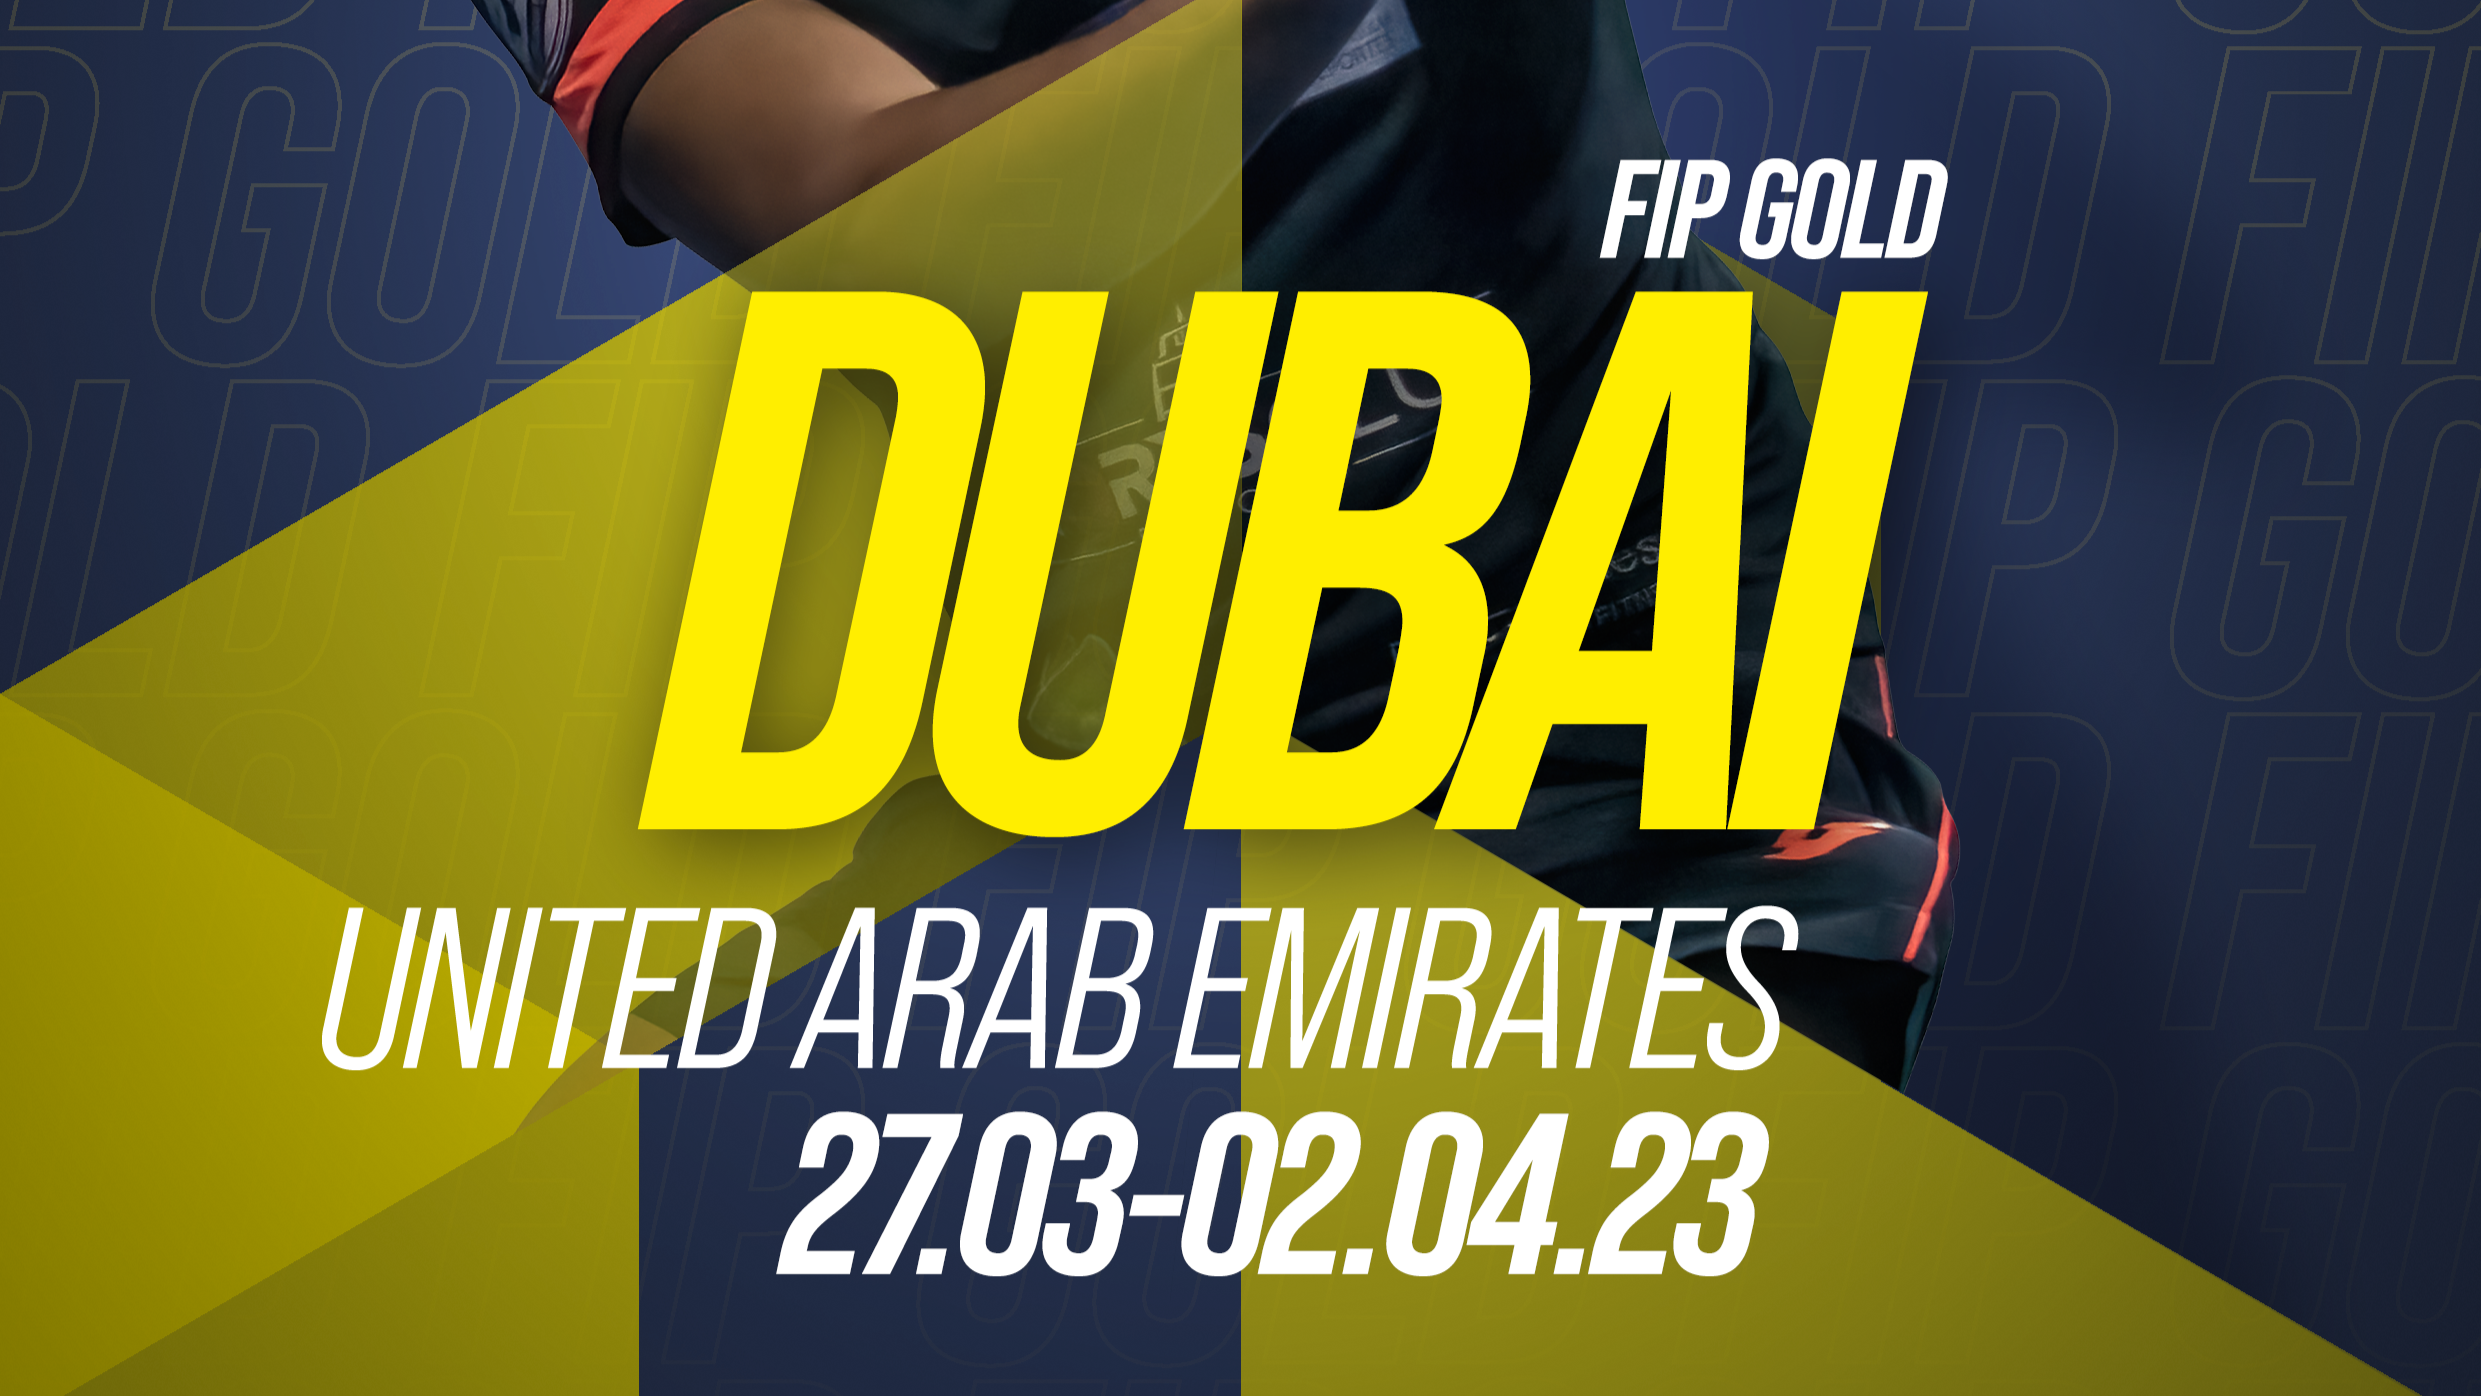 FIP GOLD DUBAI – La primera ronda en directe (amb 8 francesos!)